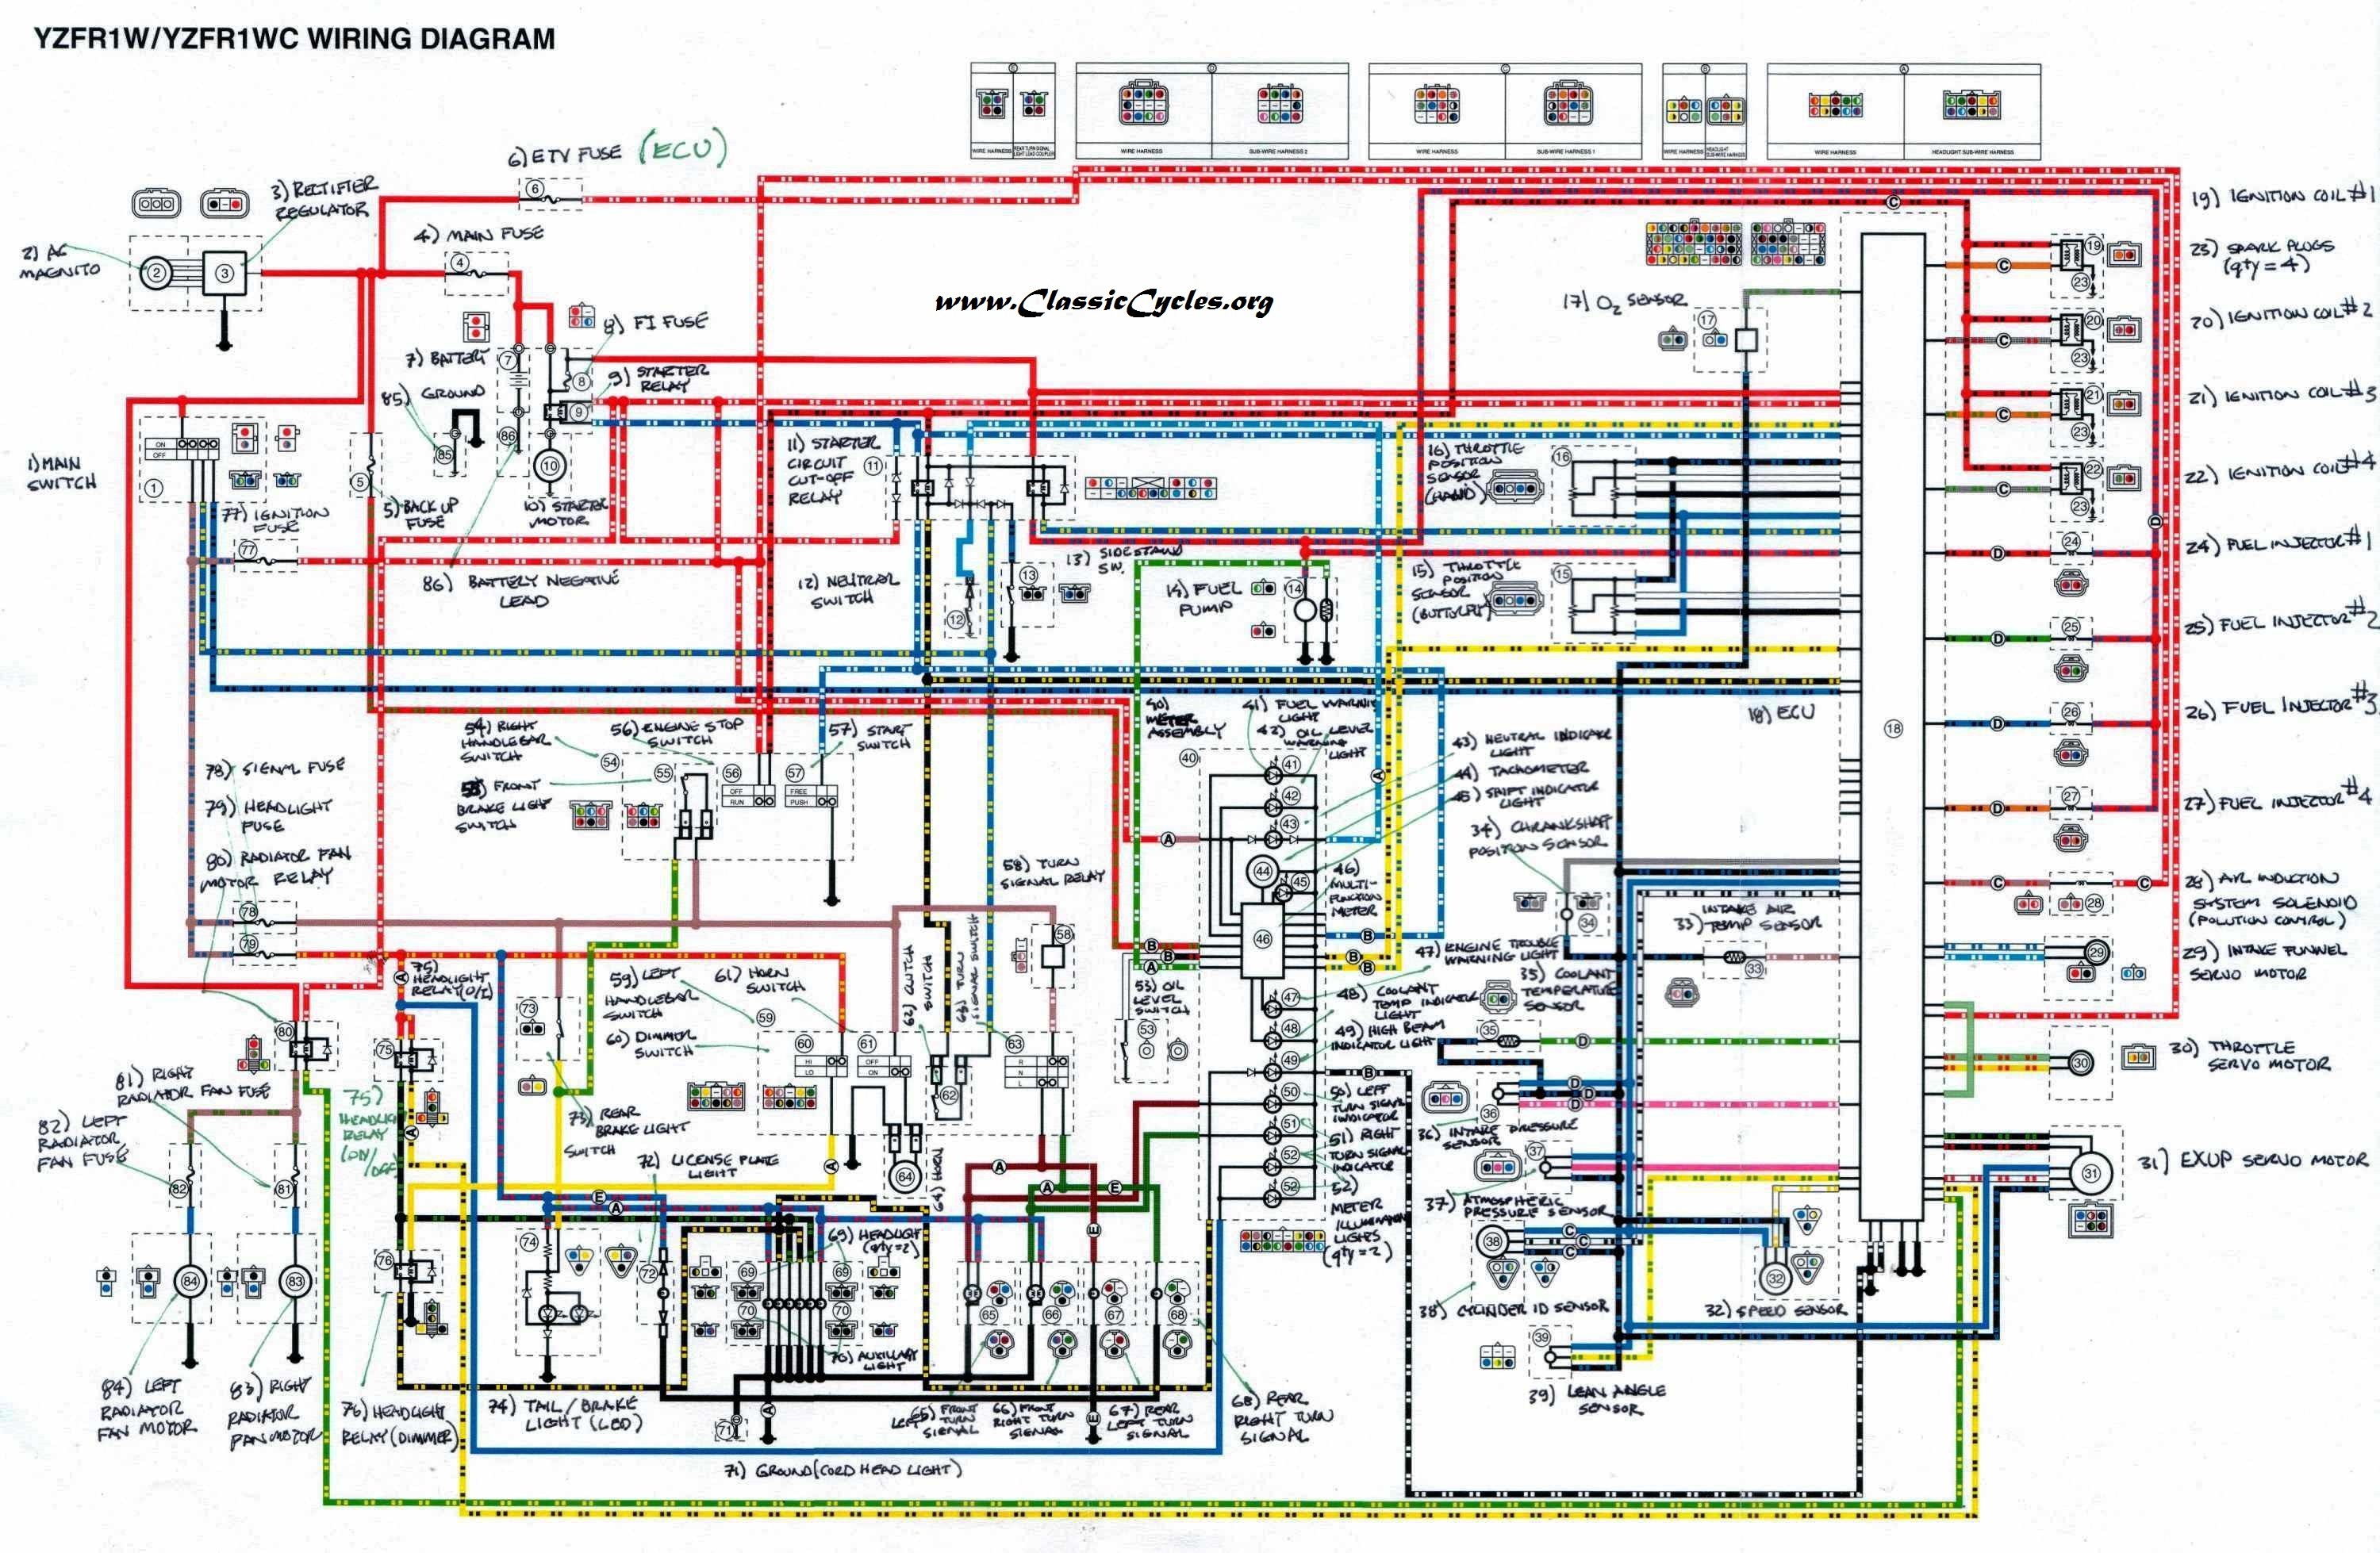 2009 yzf r1 wiring diagram wiring diagram local 2006 yamaha yzf r1 wiring diagram wiring diagram